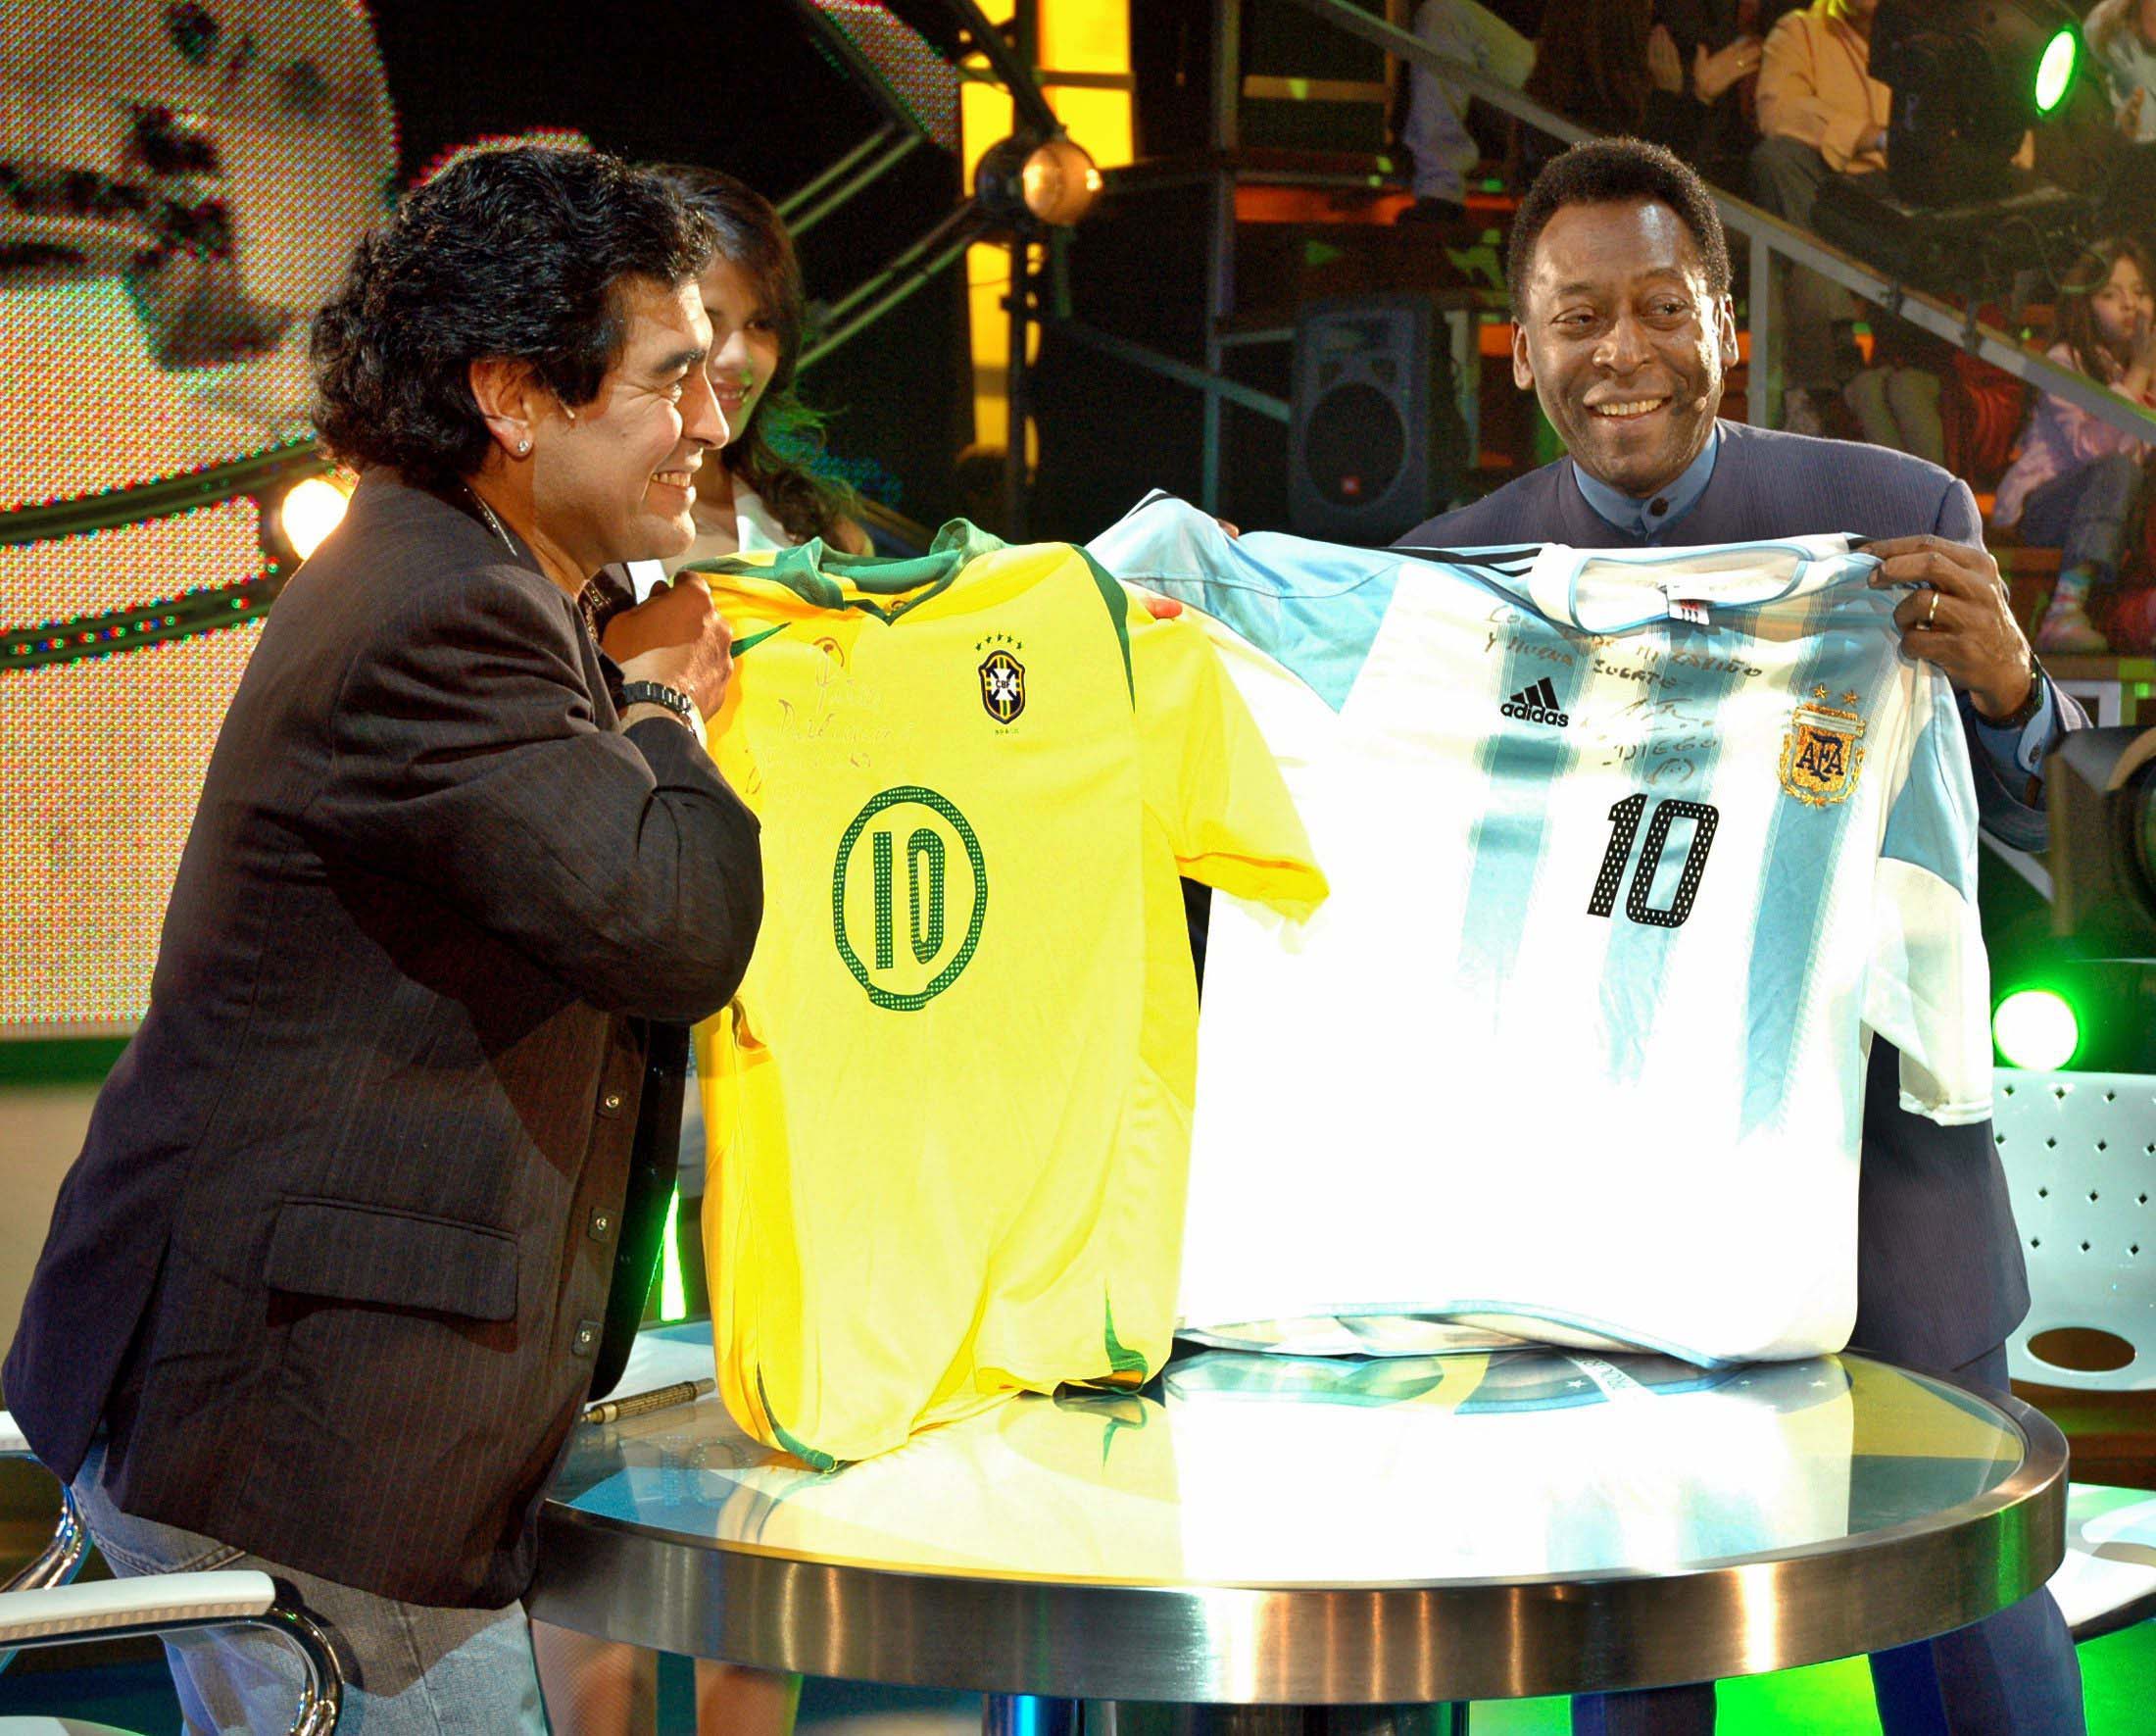 En agosto de 2005, Diego Maradona invitó a Pelé a su programa de televisión, La Noche del Diez. Intercambiaron camisetas y jugaron al fútbol (REUTERS/Prensa Canal 13/Handout)